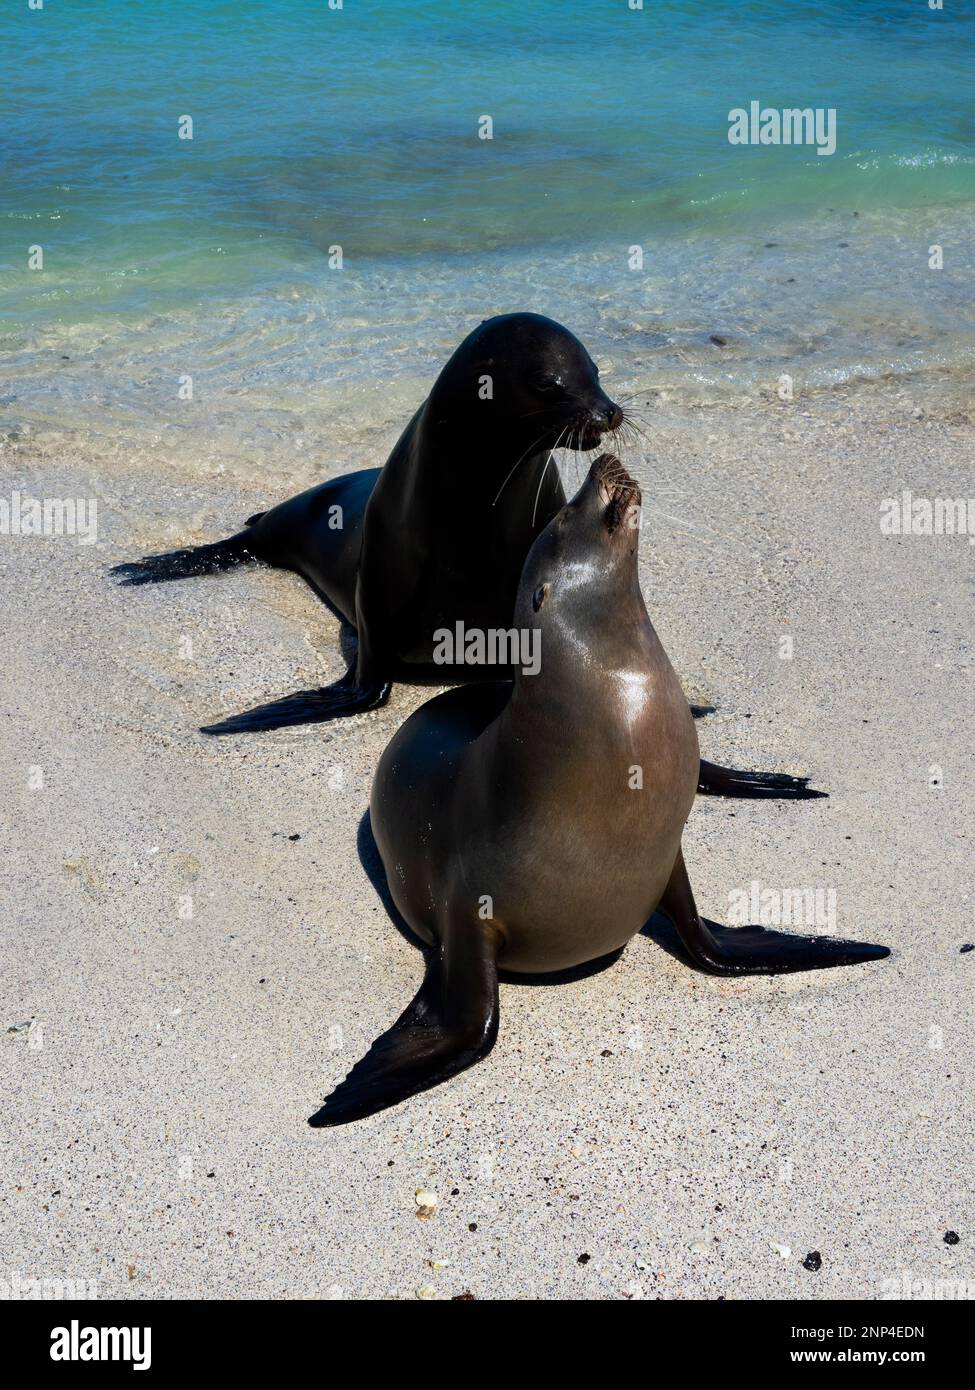 Due leoni marini sulla spiaggia, l'isolotto di cappello cinese, le Galapagos, l'Ecuador Foto Stock